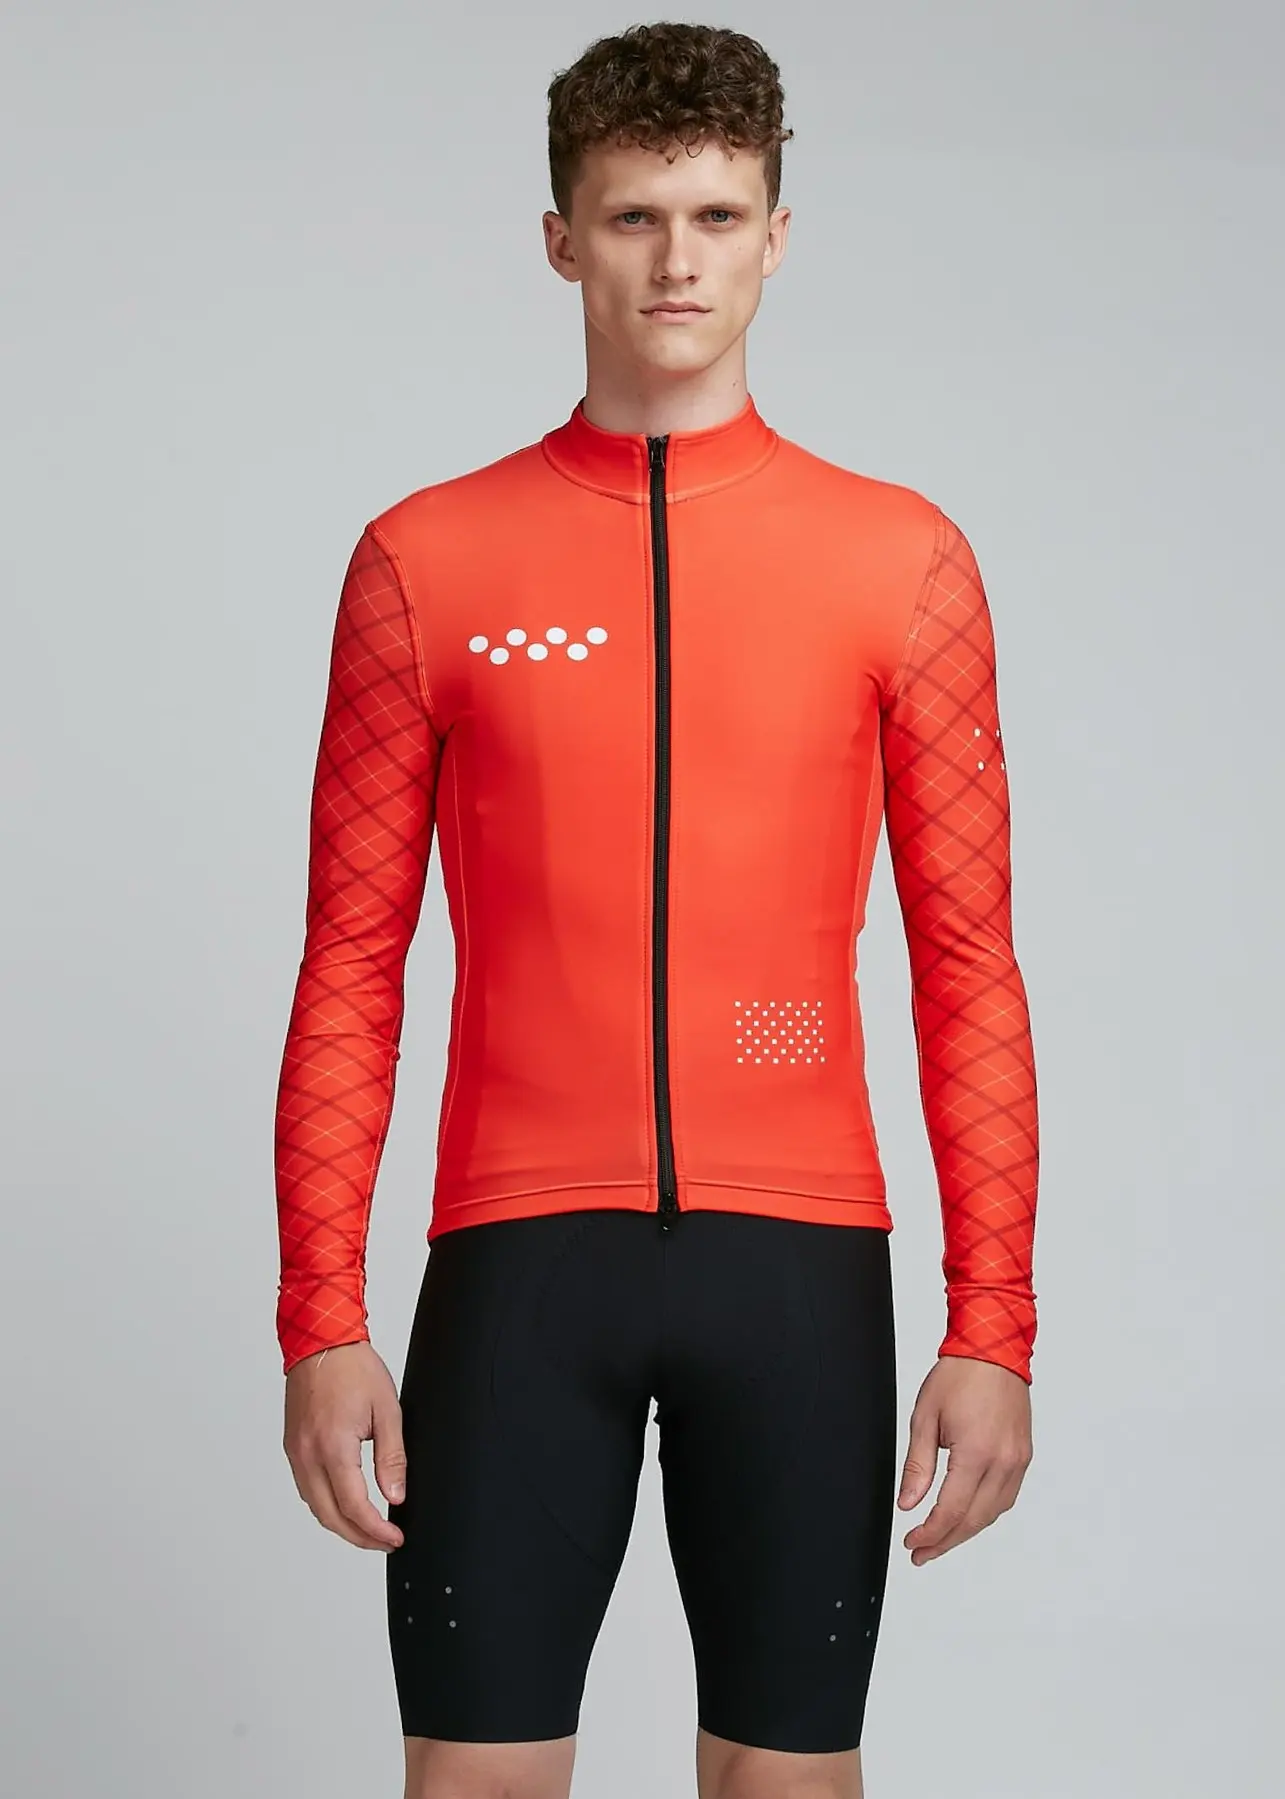 Зимняя мужская одежда для велоспорта с длинным рукавом из теплого флиса, Джерси для велоспорта pro racing fit, Майки для велоспорта Ropa Ciclismo, лучшее качество